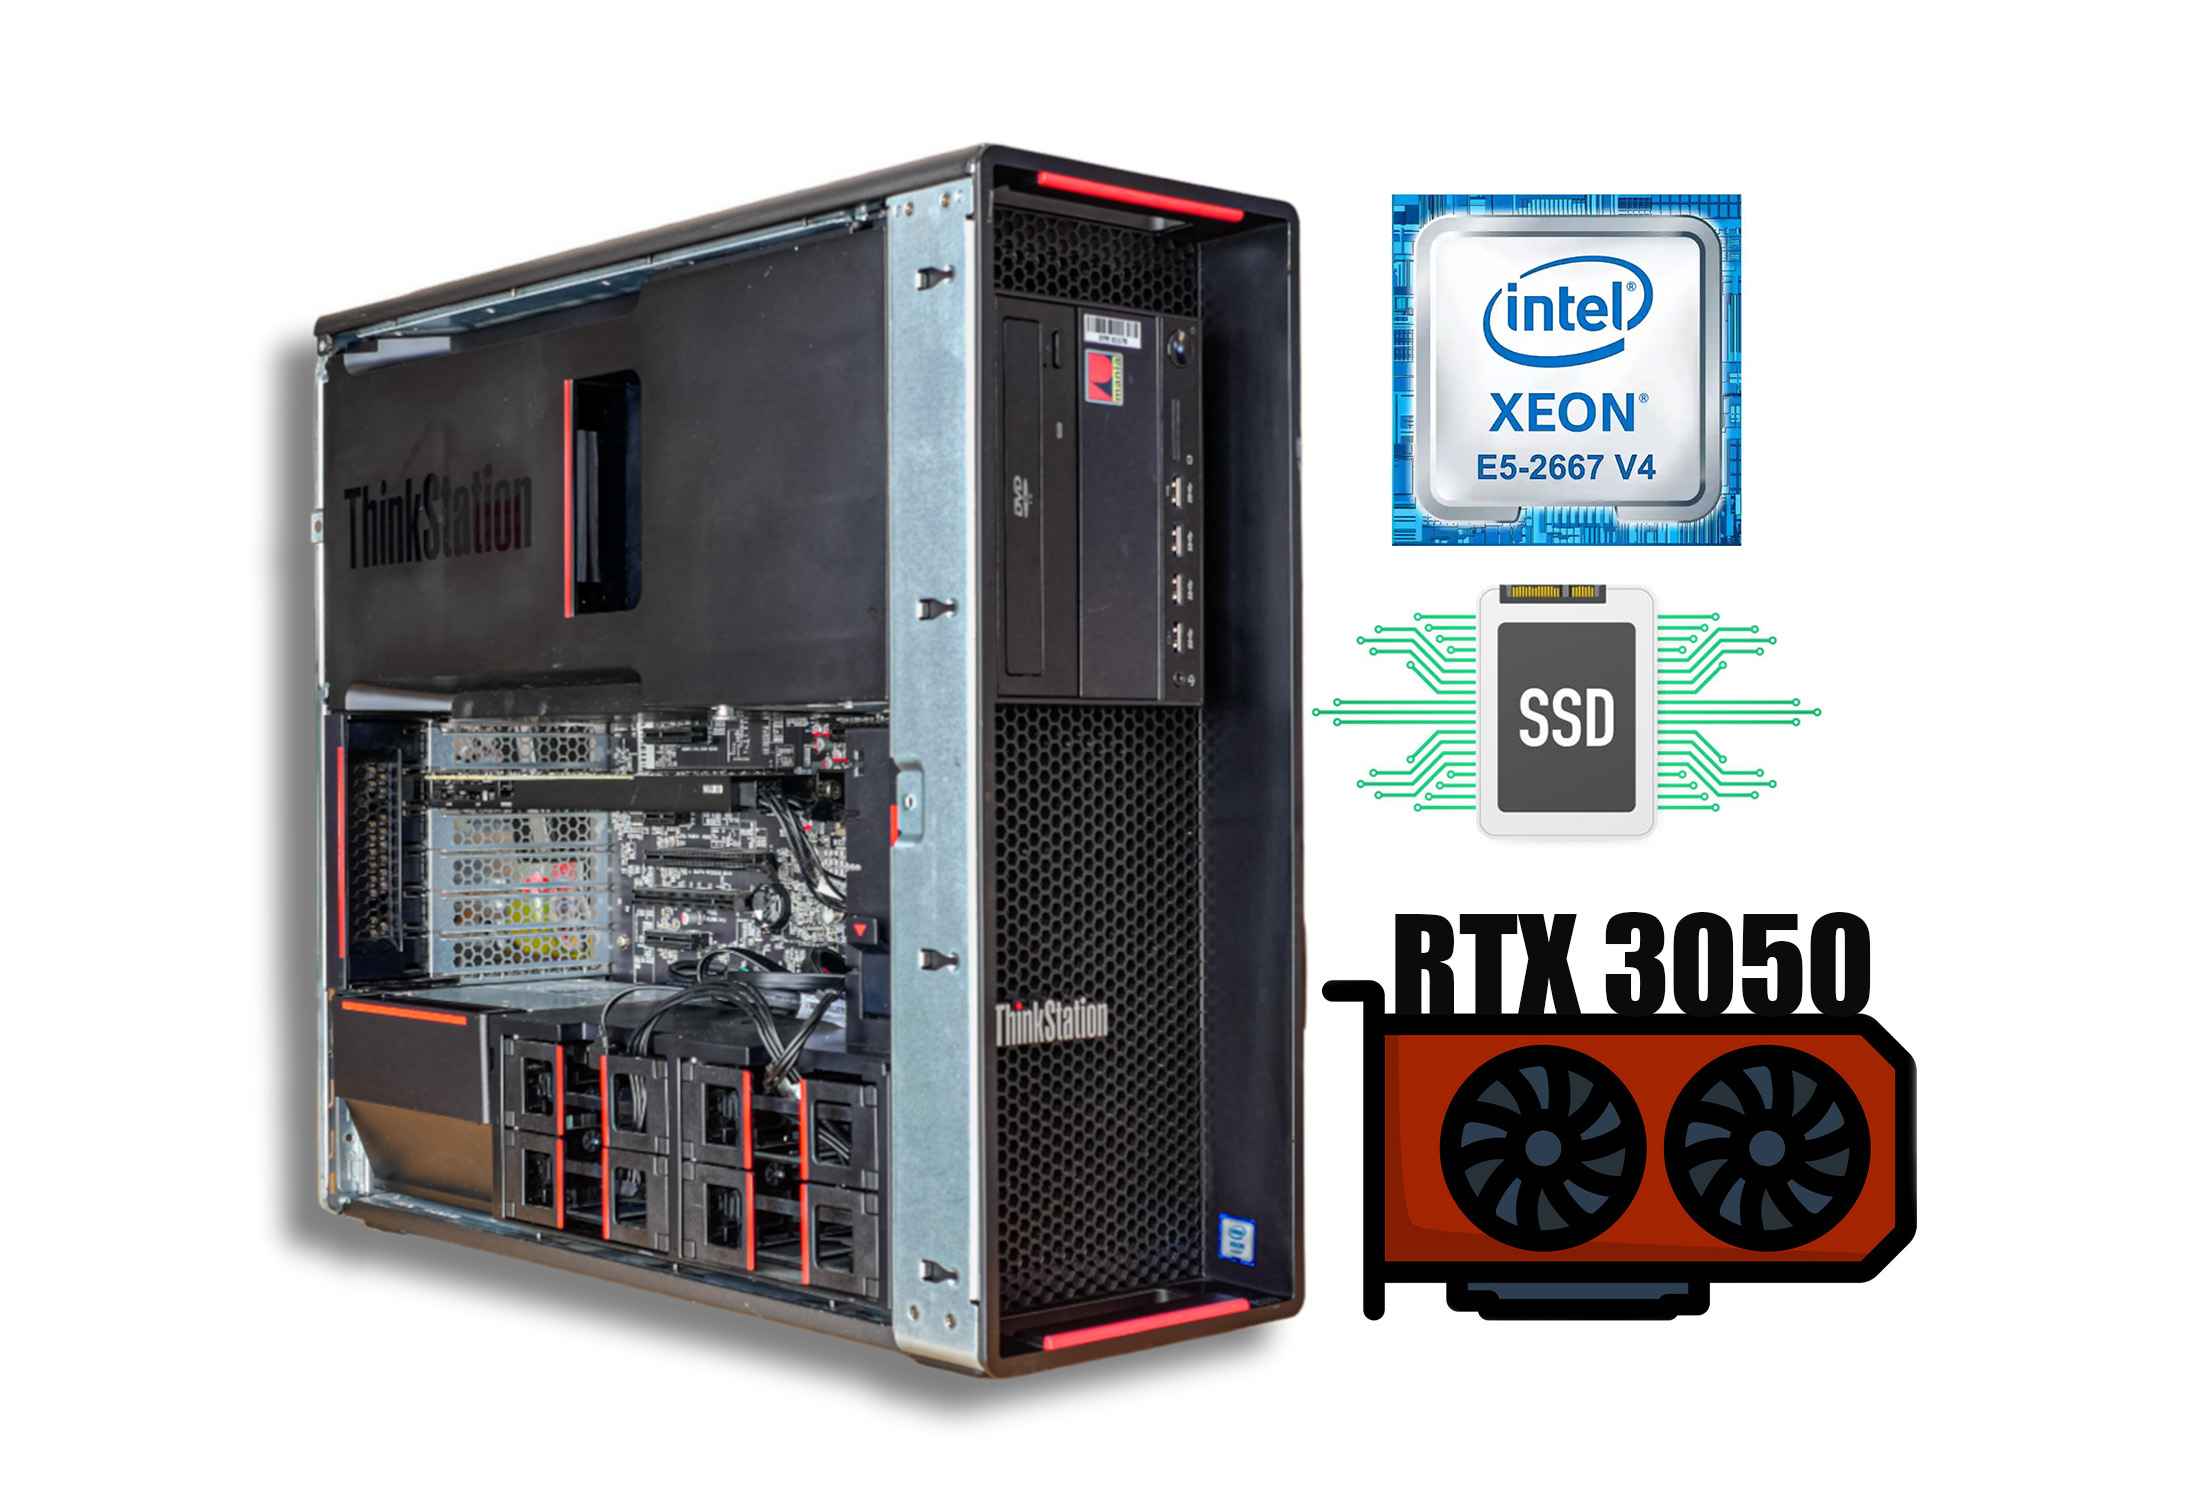 Lenovo Thinkstation P510  E5-2667v4  32GB RAM SSD  RTX 3050